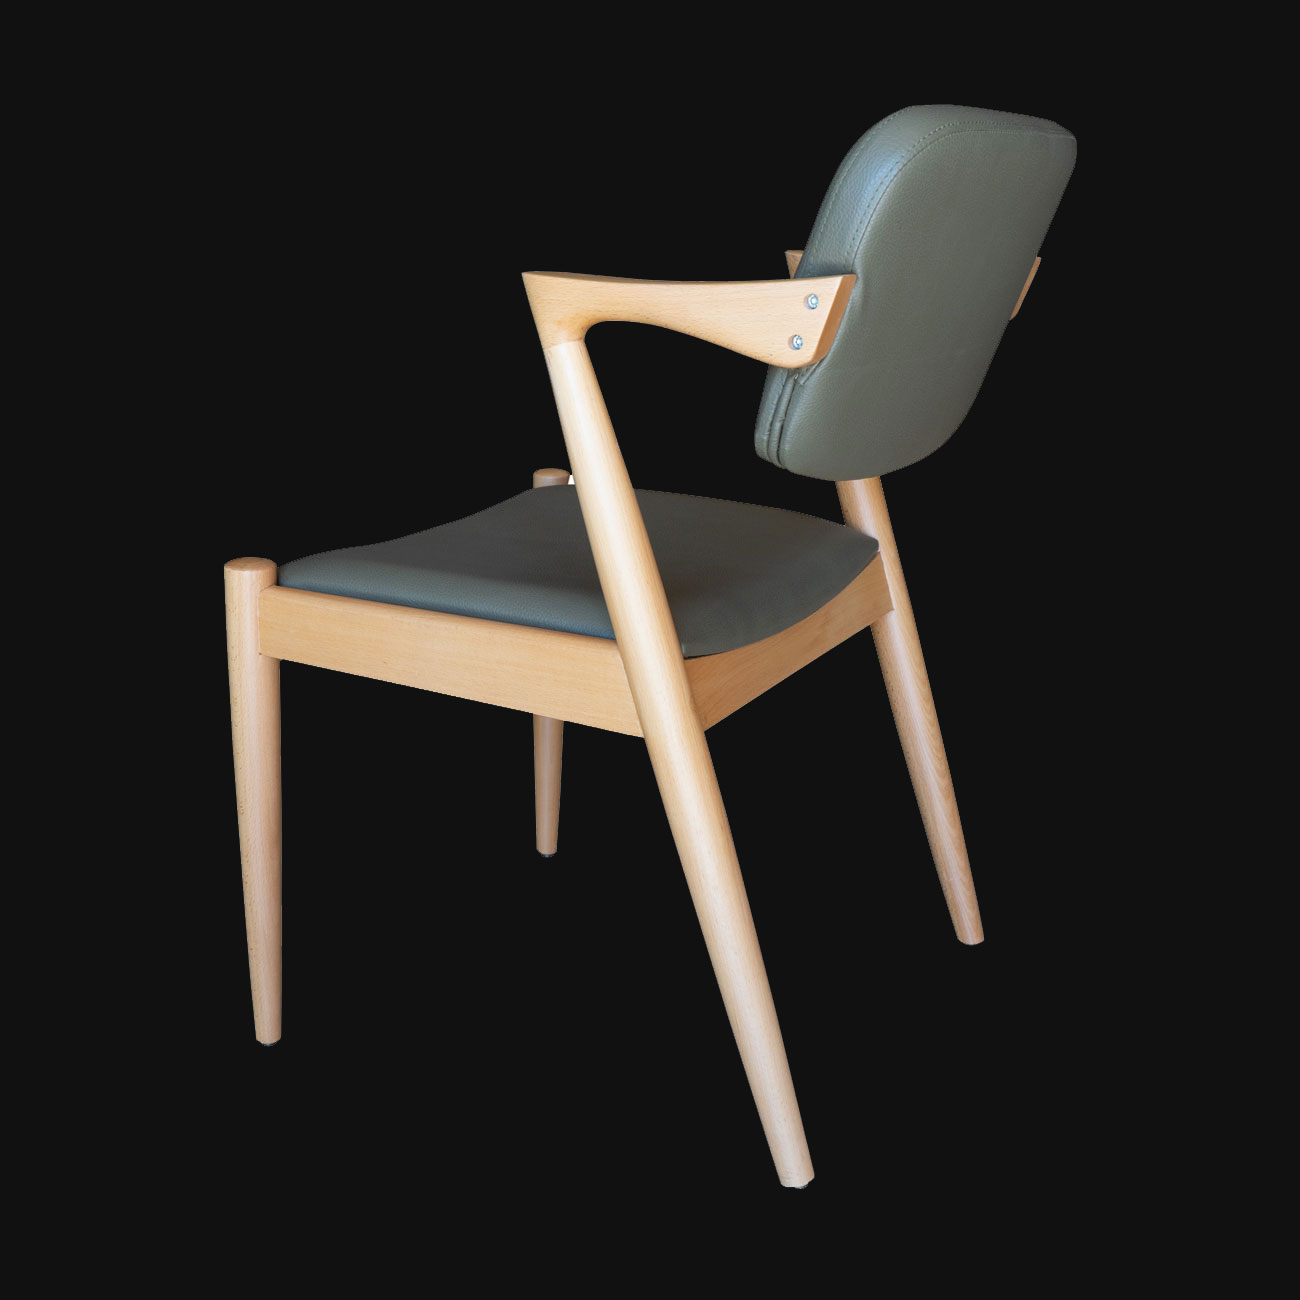 ahşap ayaklı cafe sandalyesi, cafe sandalyesi modelleri, sandalye modelleri